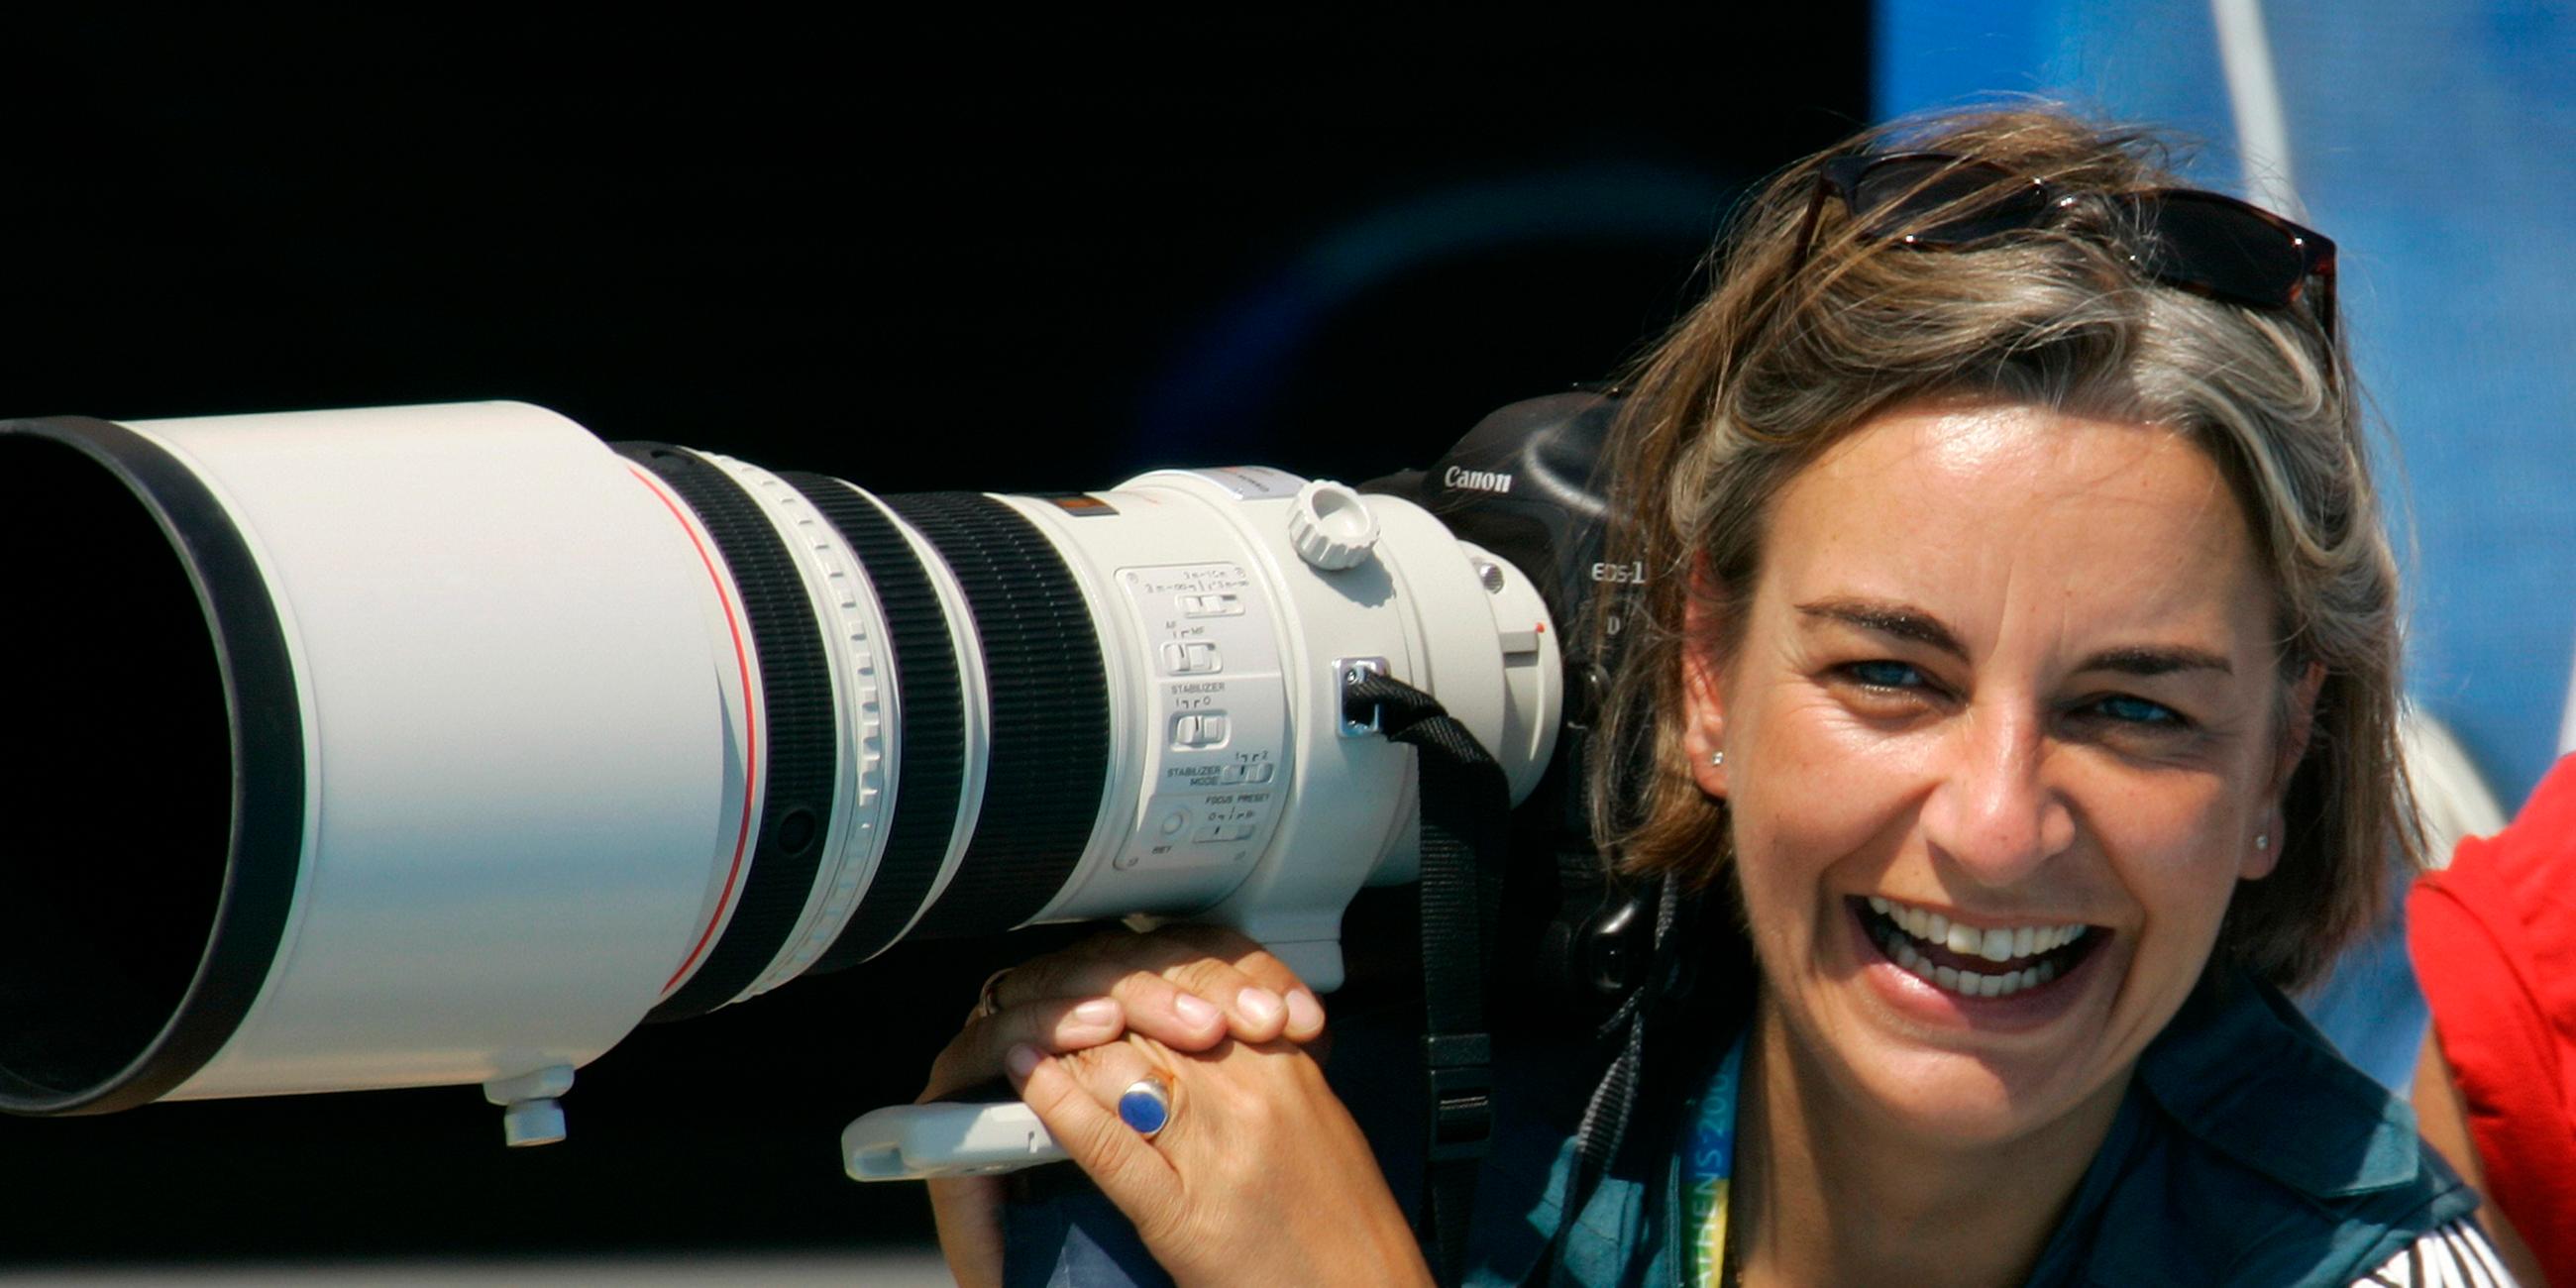 Fotografin Anja Niedringhaus lacht, in ihrer Hand hält sie eine Fotokamera.